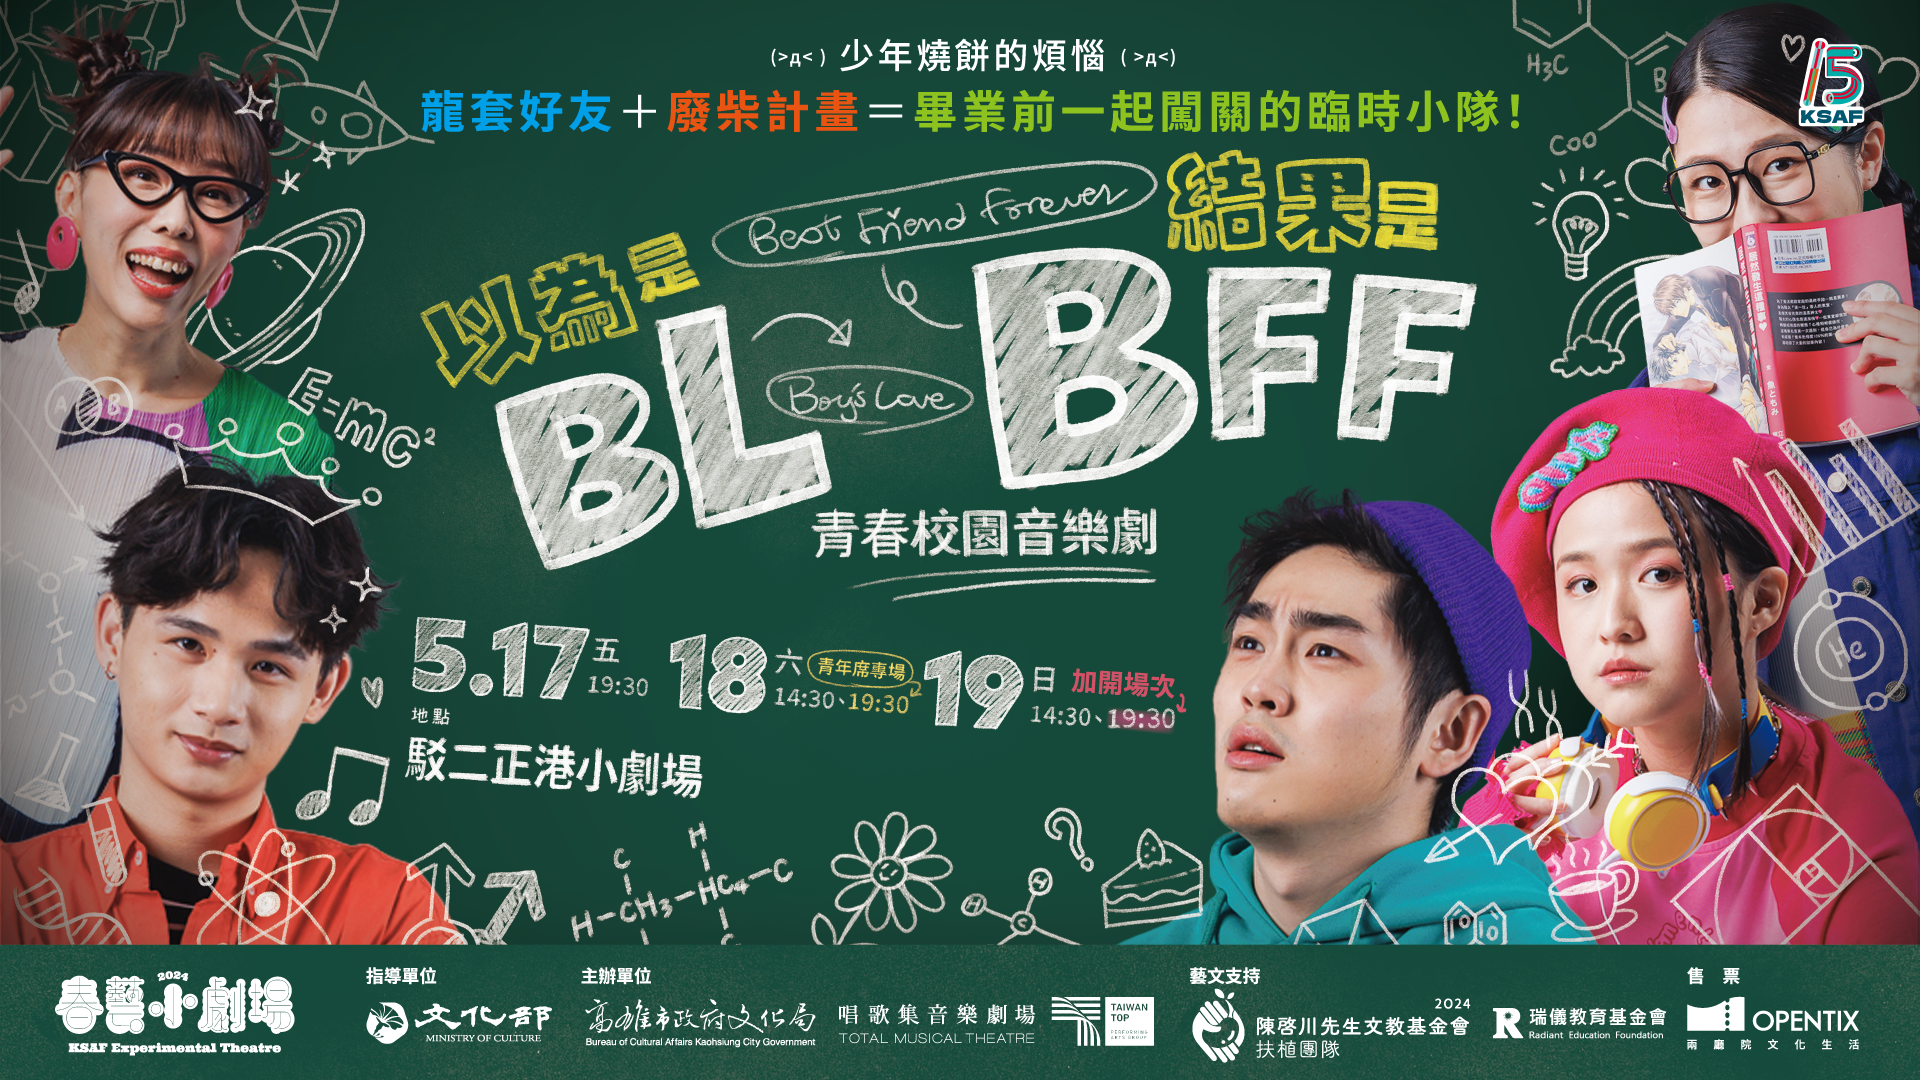 唱歌集炫風登台春藝小劇場 推出青春校園音樂劇《以為是BL結果是BFF》